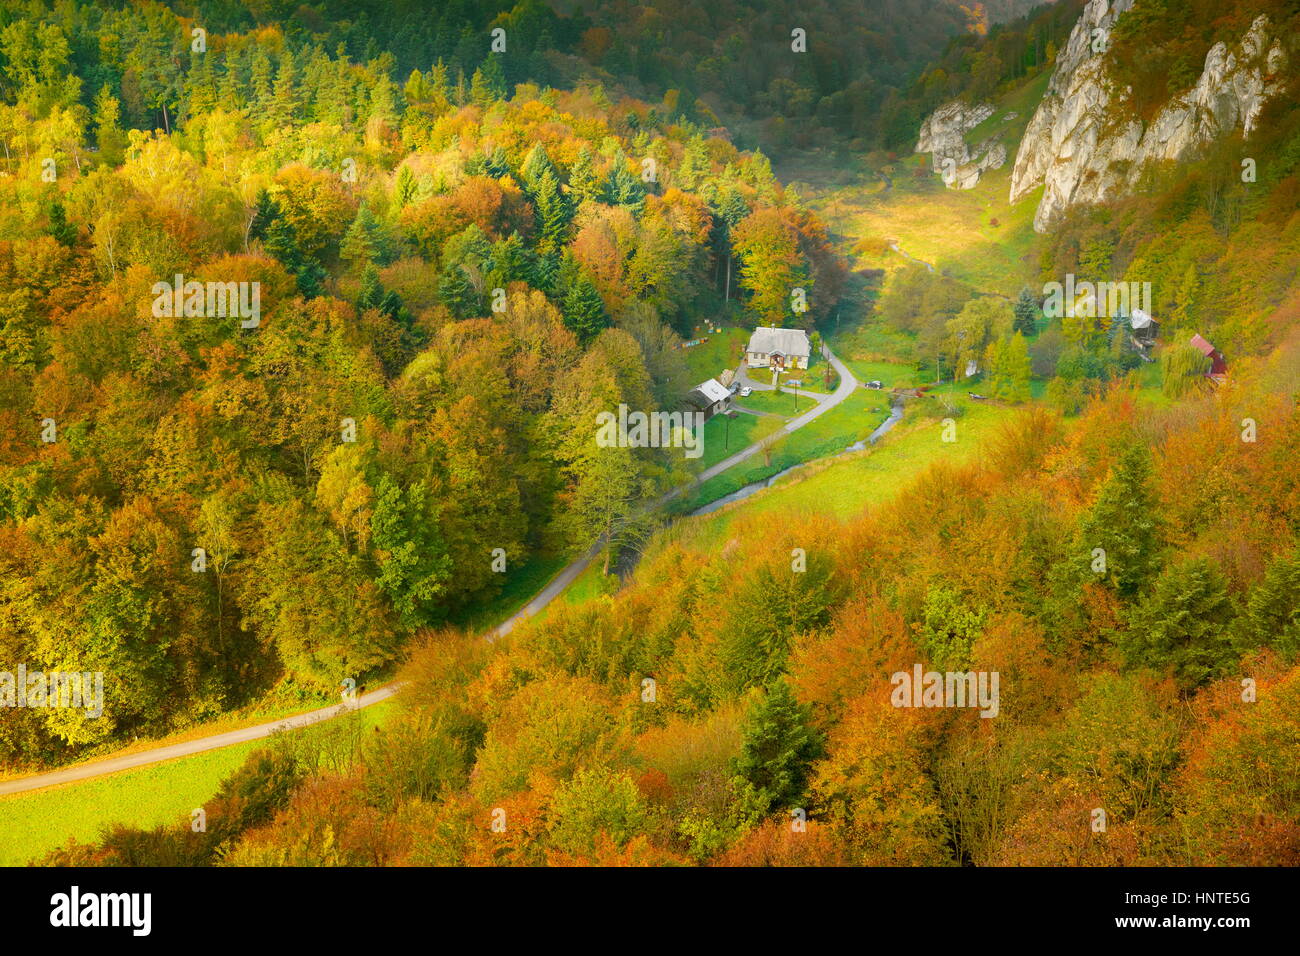 Jura Mountains autumn landscape, Pradnik Valley, Poland, Europe Stock Photo